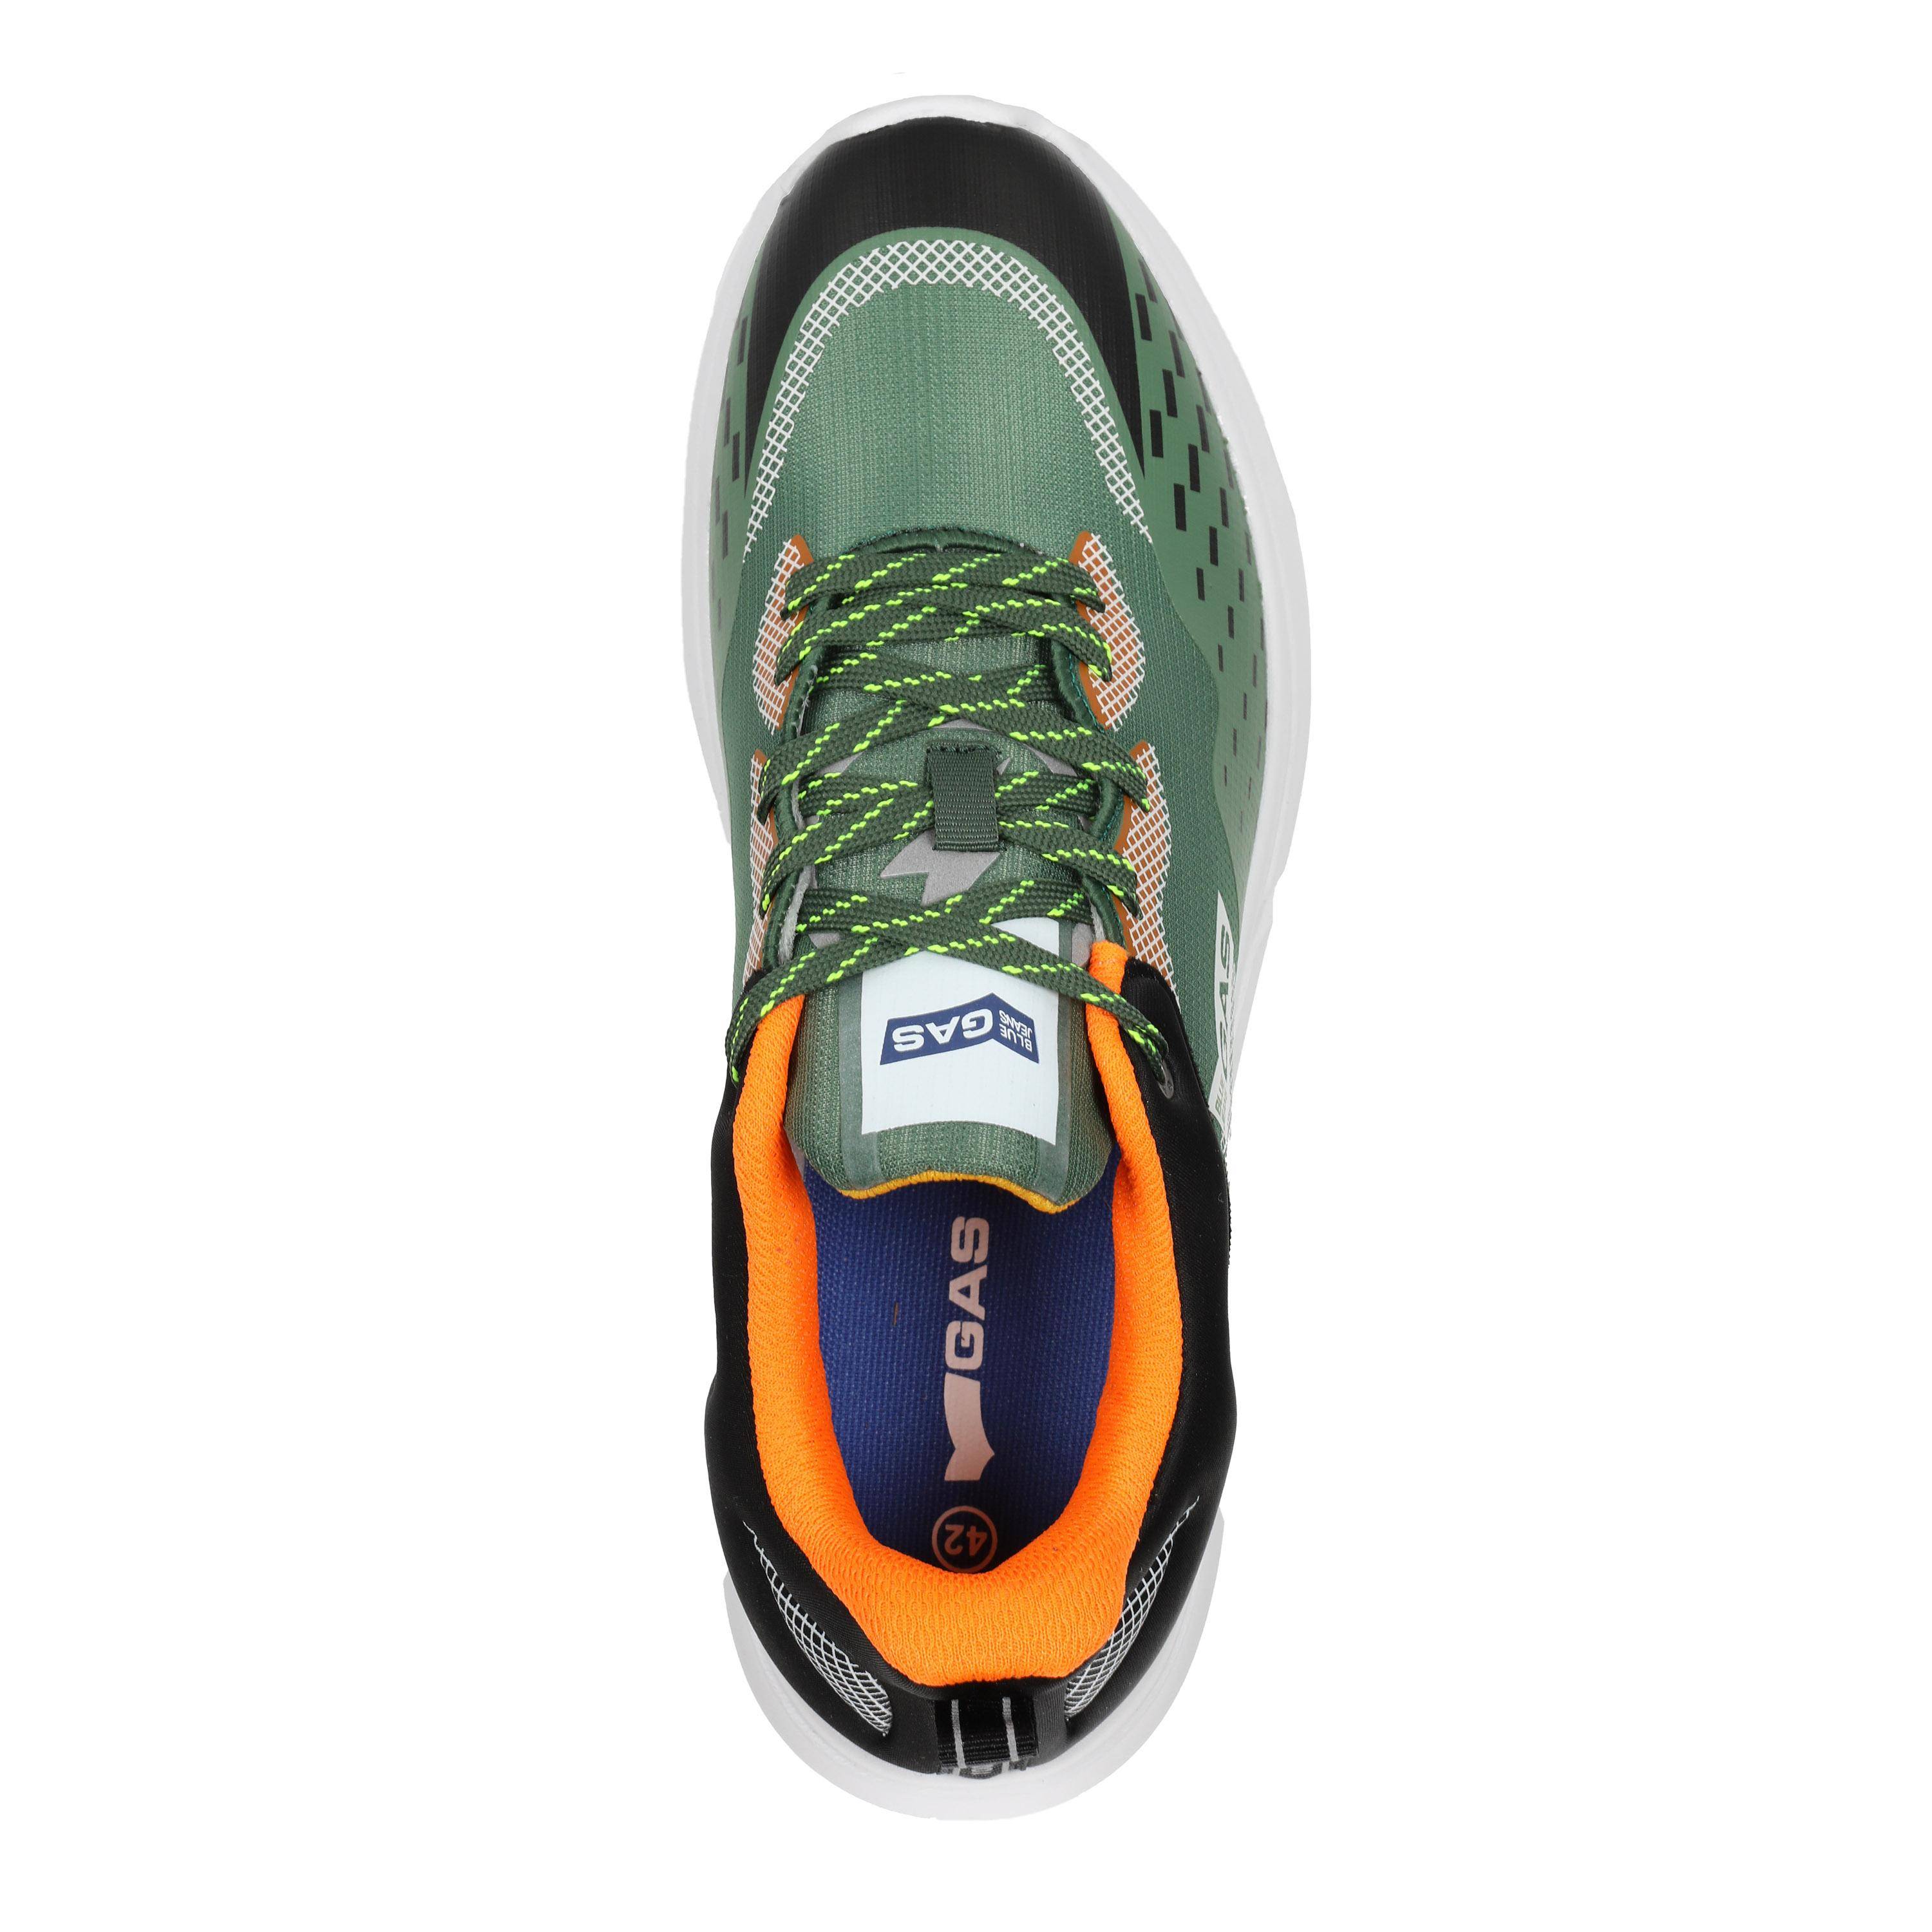 Мужские кроссовки GAS, зеленые, цвет зеленый, размер 44 - фото 4